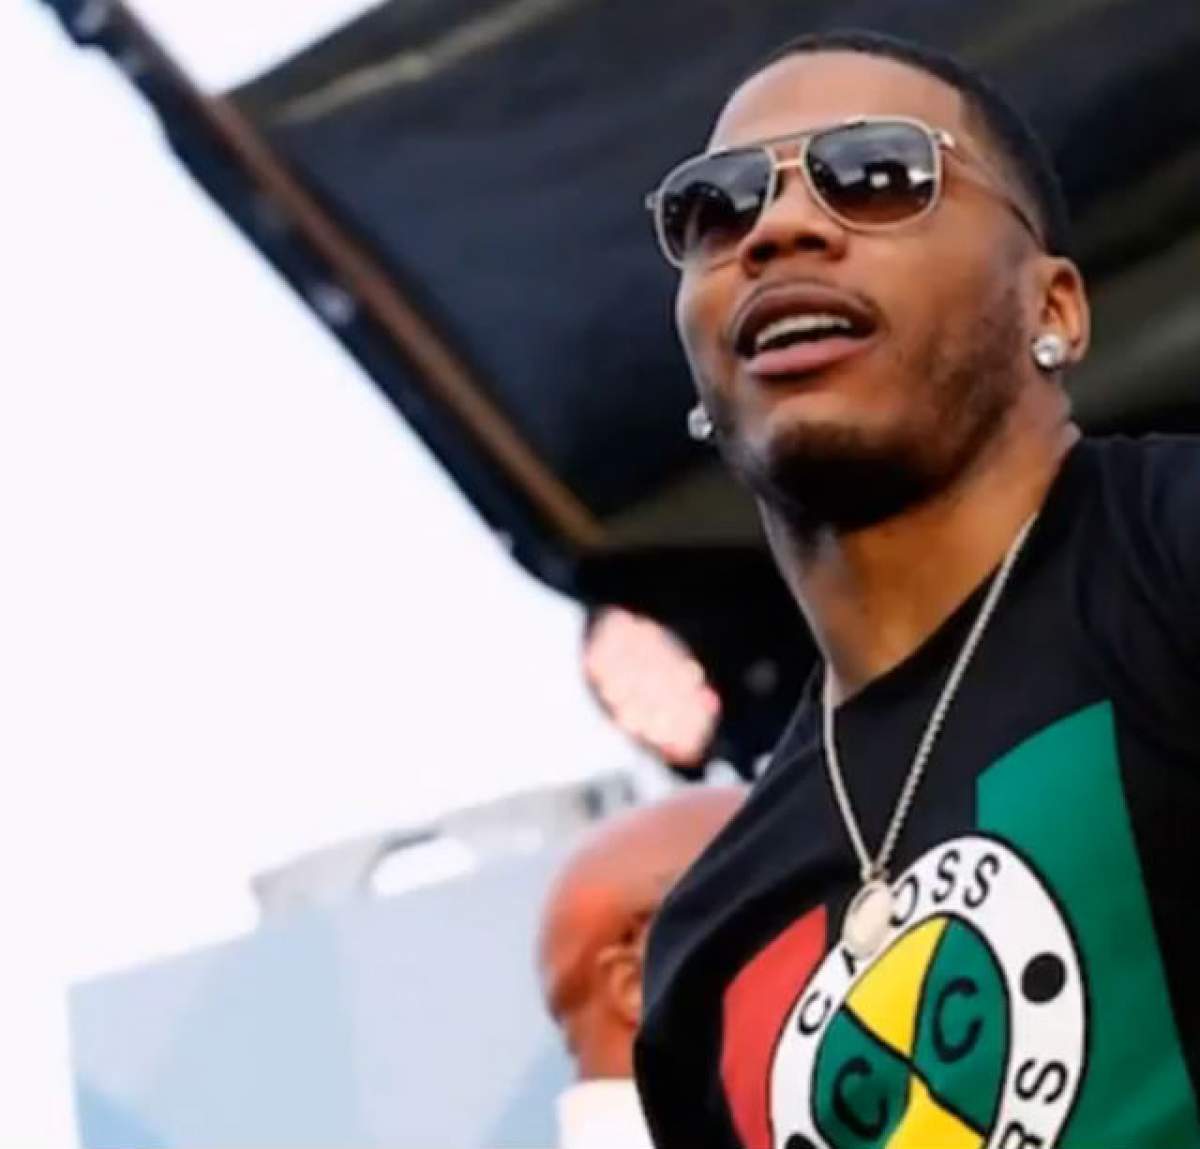 Nelly, unul dintre cei mai cunoscuți rapperi, a fost arestat pentru posesie de droguri